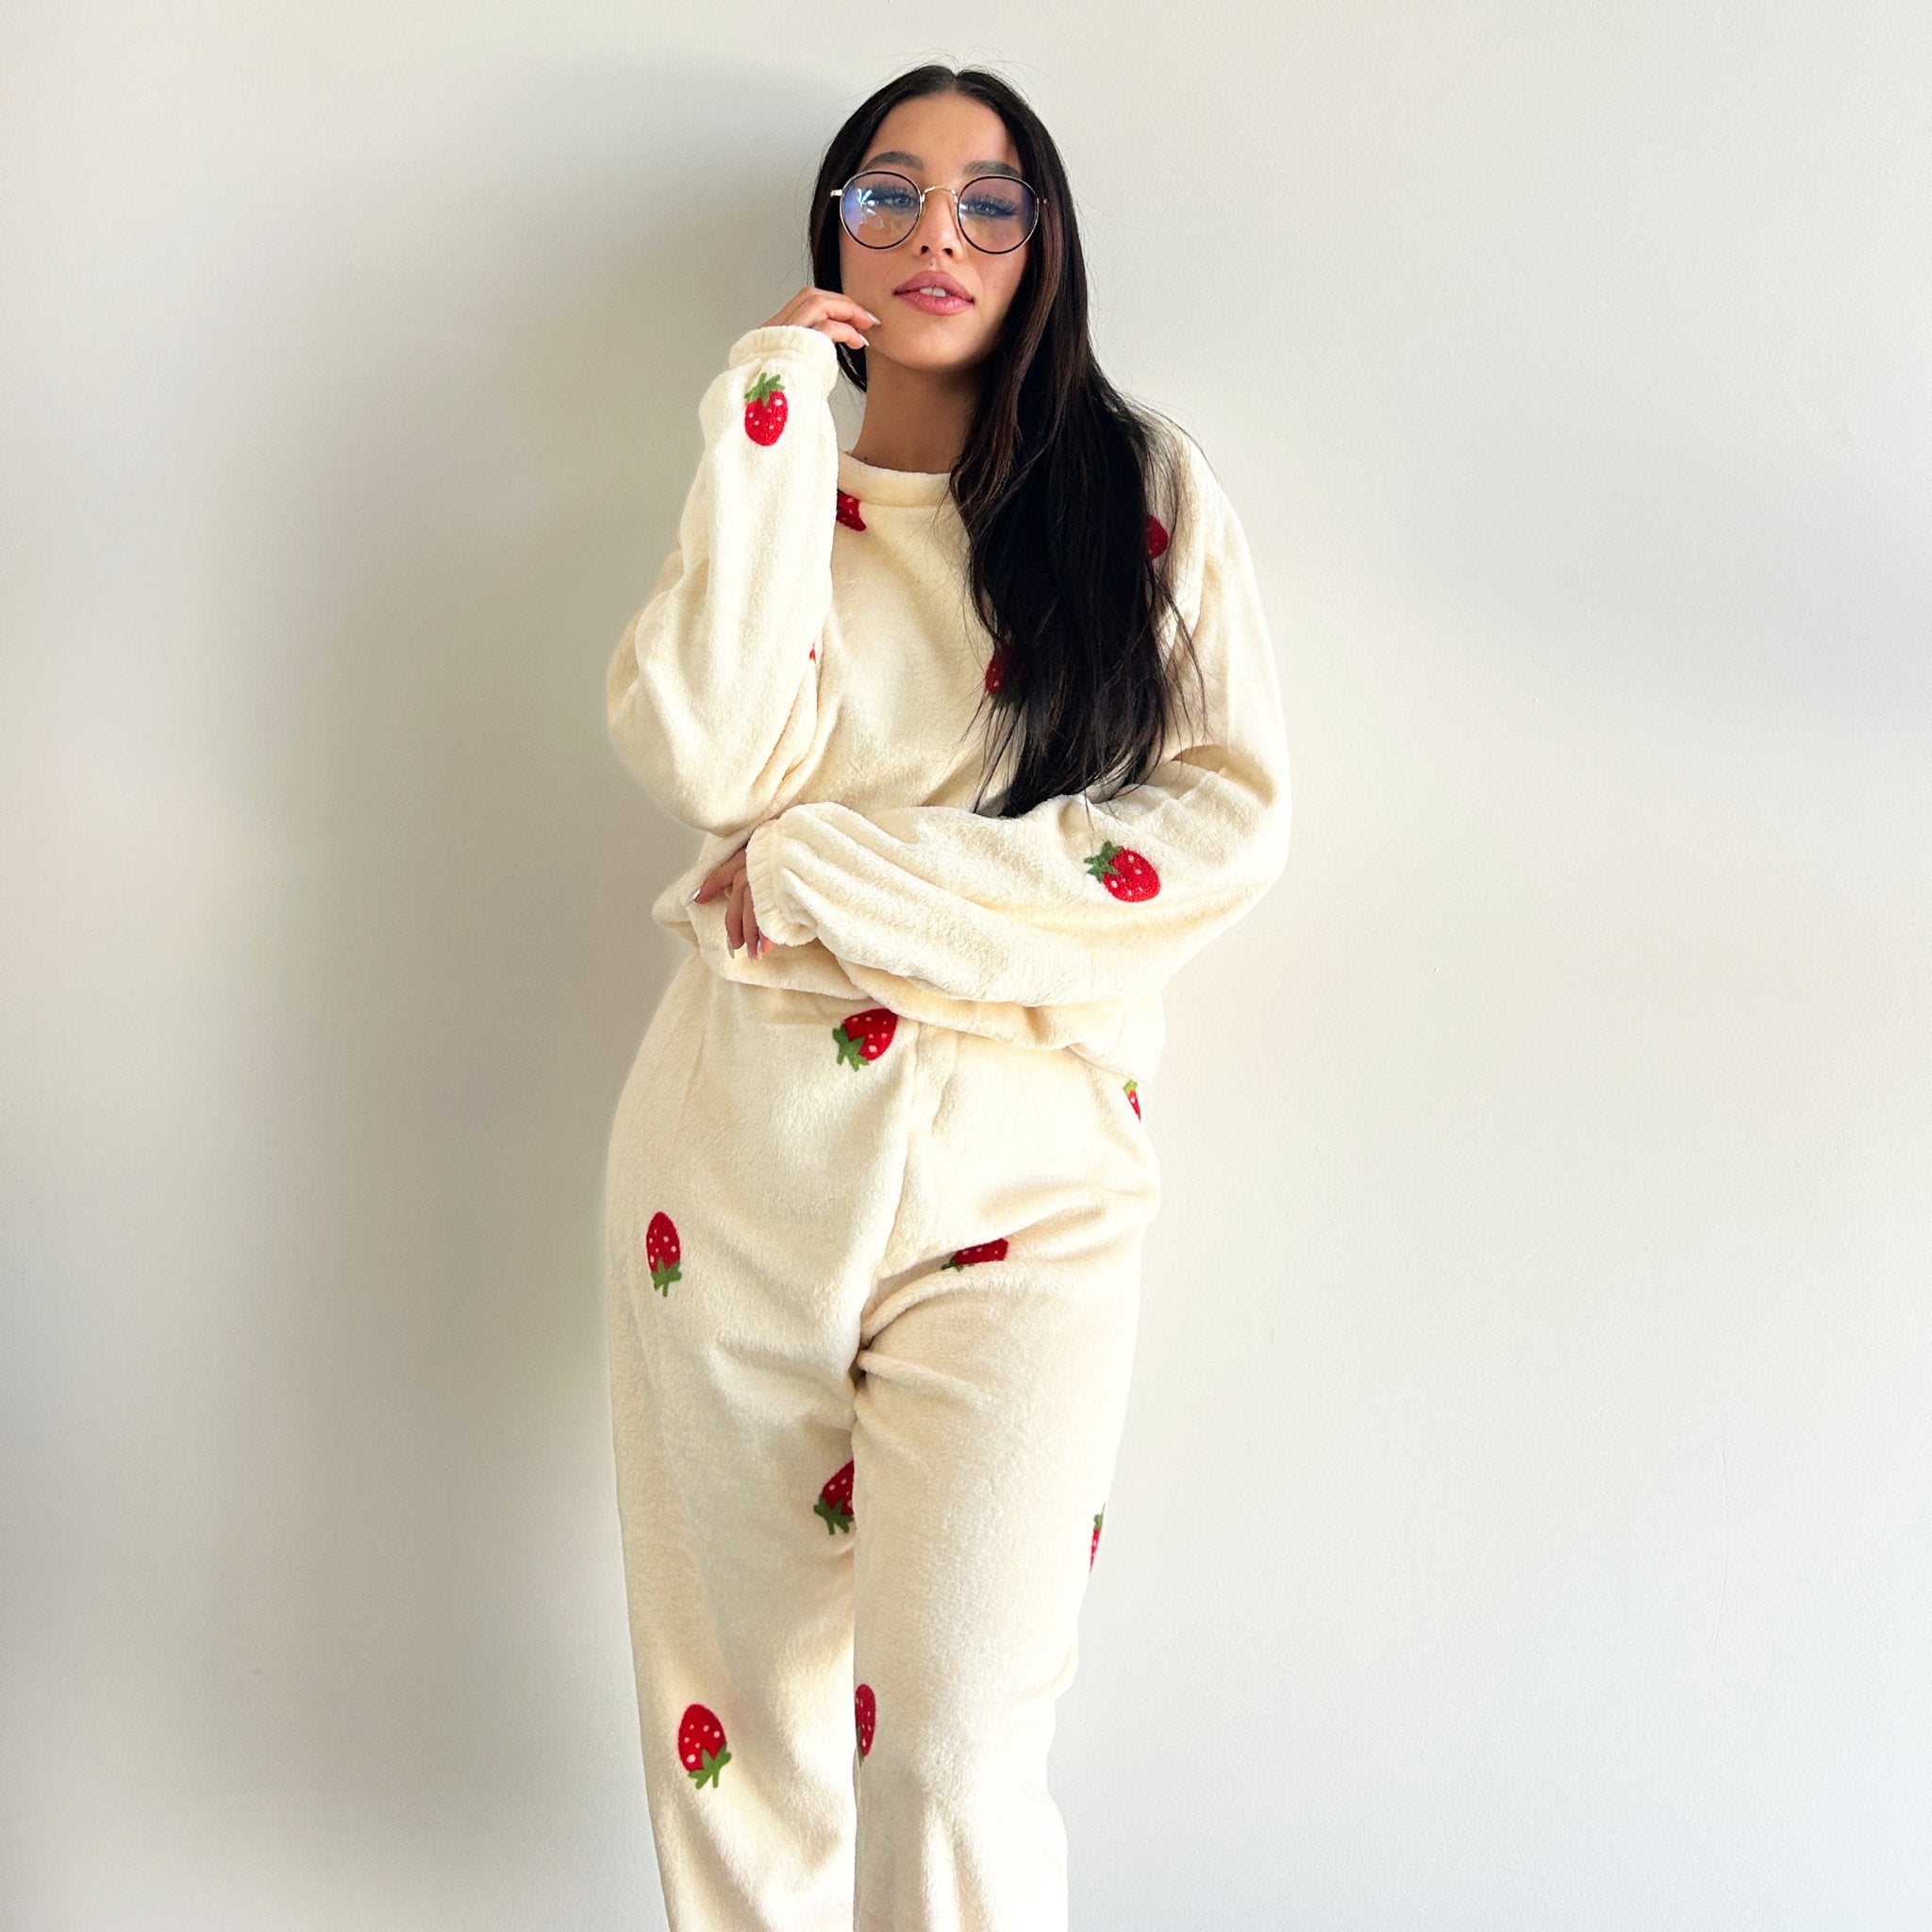 Pijama Polar 2 Piezas Blanca Fresitas - Sticky Bra #brasier_sin_espalda# #brasier_para_escotes# #brasier_para_vestido# #brasier_strapless# #brasier_adhesivo# #brasier_adherente# #brasier_de_silicon# #brasier_escot